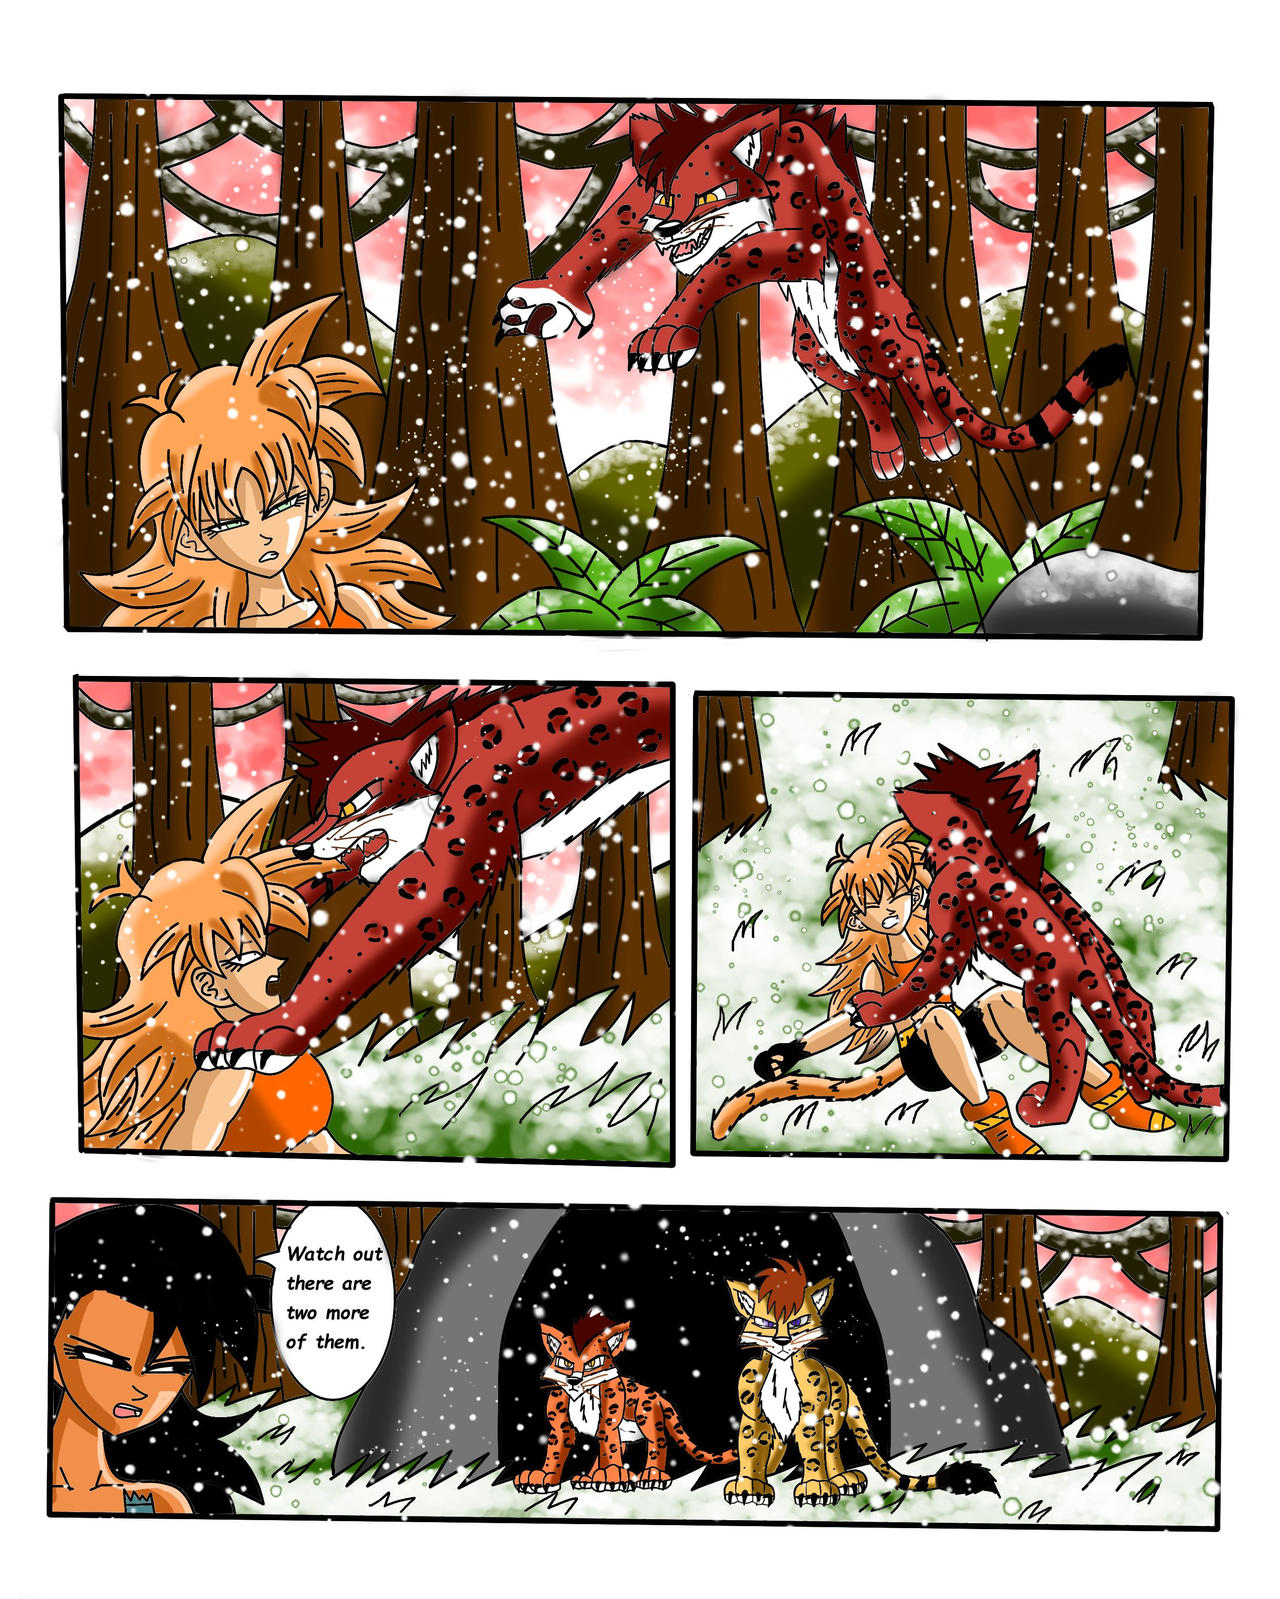 Dragon Ball Super: Bebi Arc Episode 1: Page 1 by KevinBeaver on DeviantArt